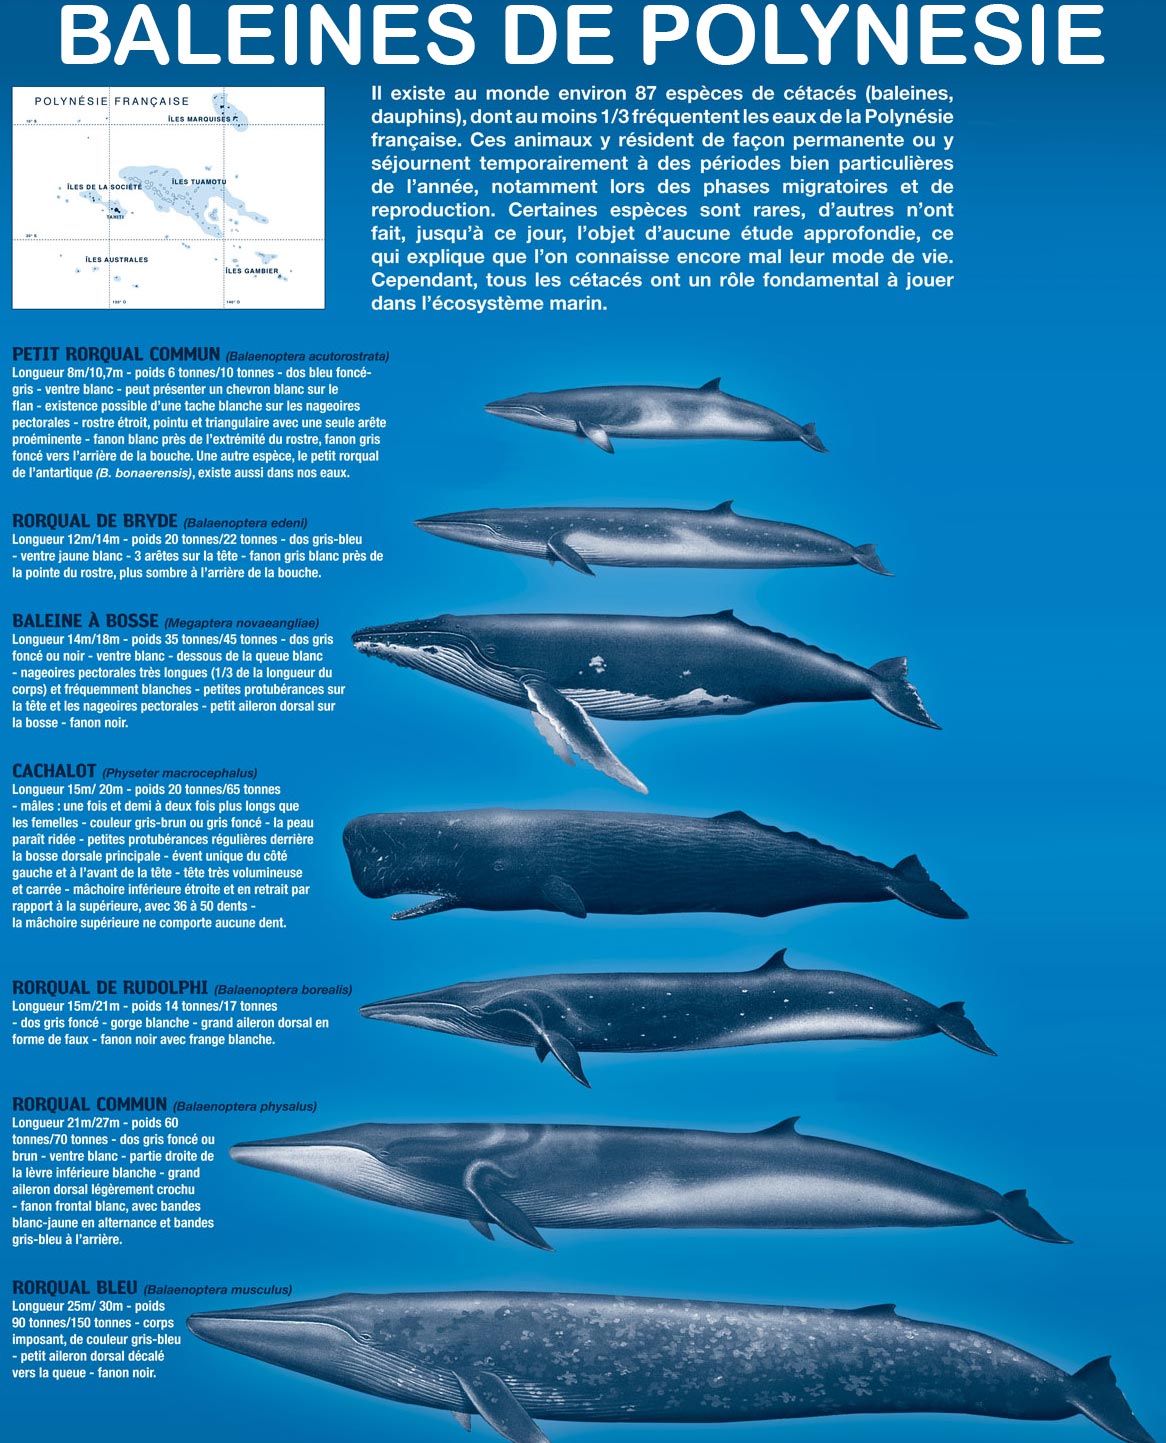 Baleines en Polynésie - les espèces